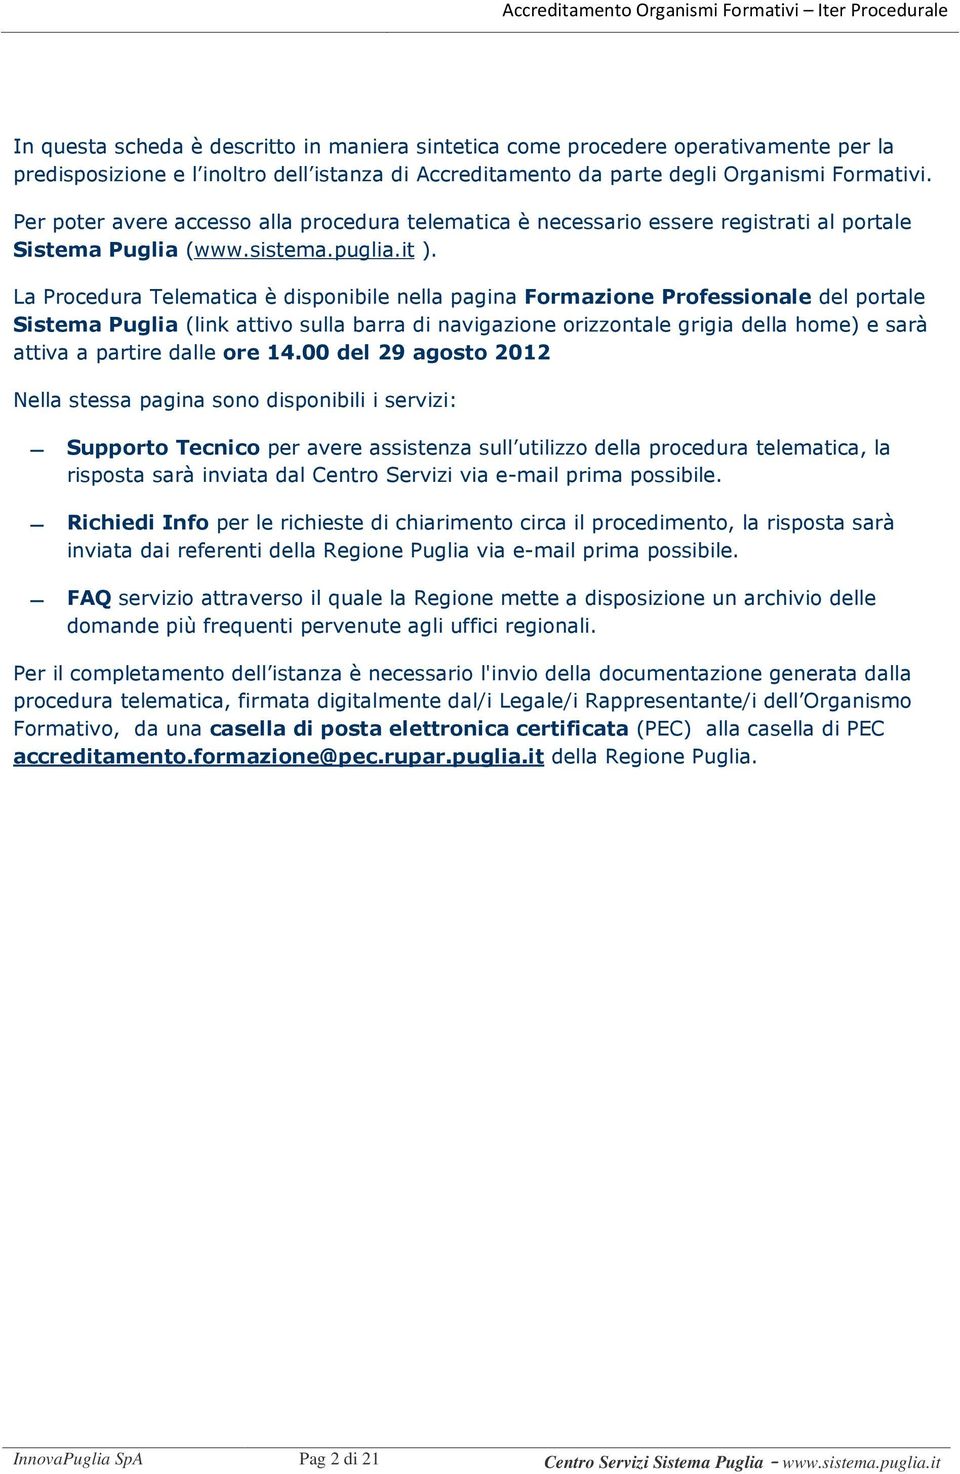 La Procedura Telematica è disponibile nella pagina Formazione Professionale del portale Sistema Puglia (link attivo sulla barra di navigazione orizzontale grigia della home) e sarà attiva a partire